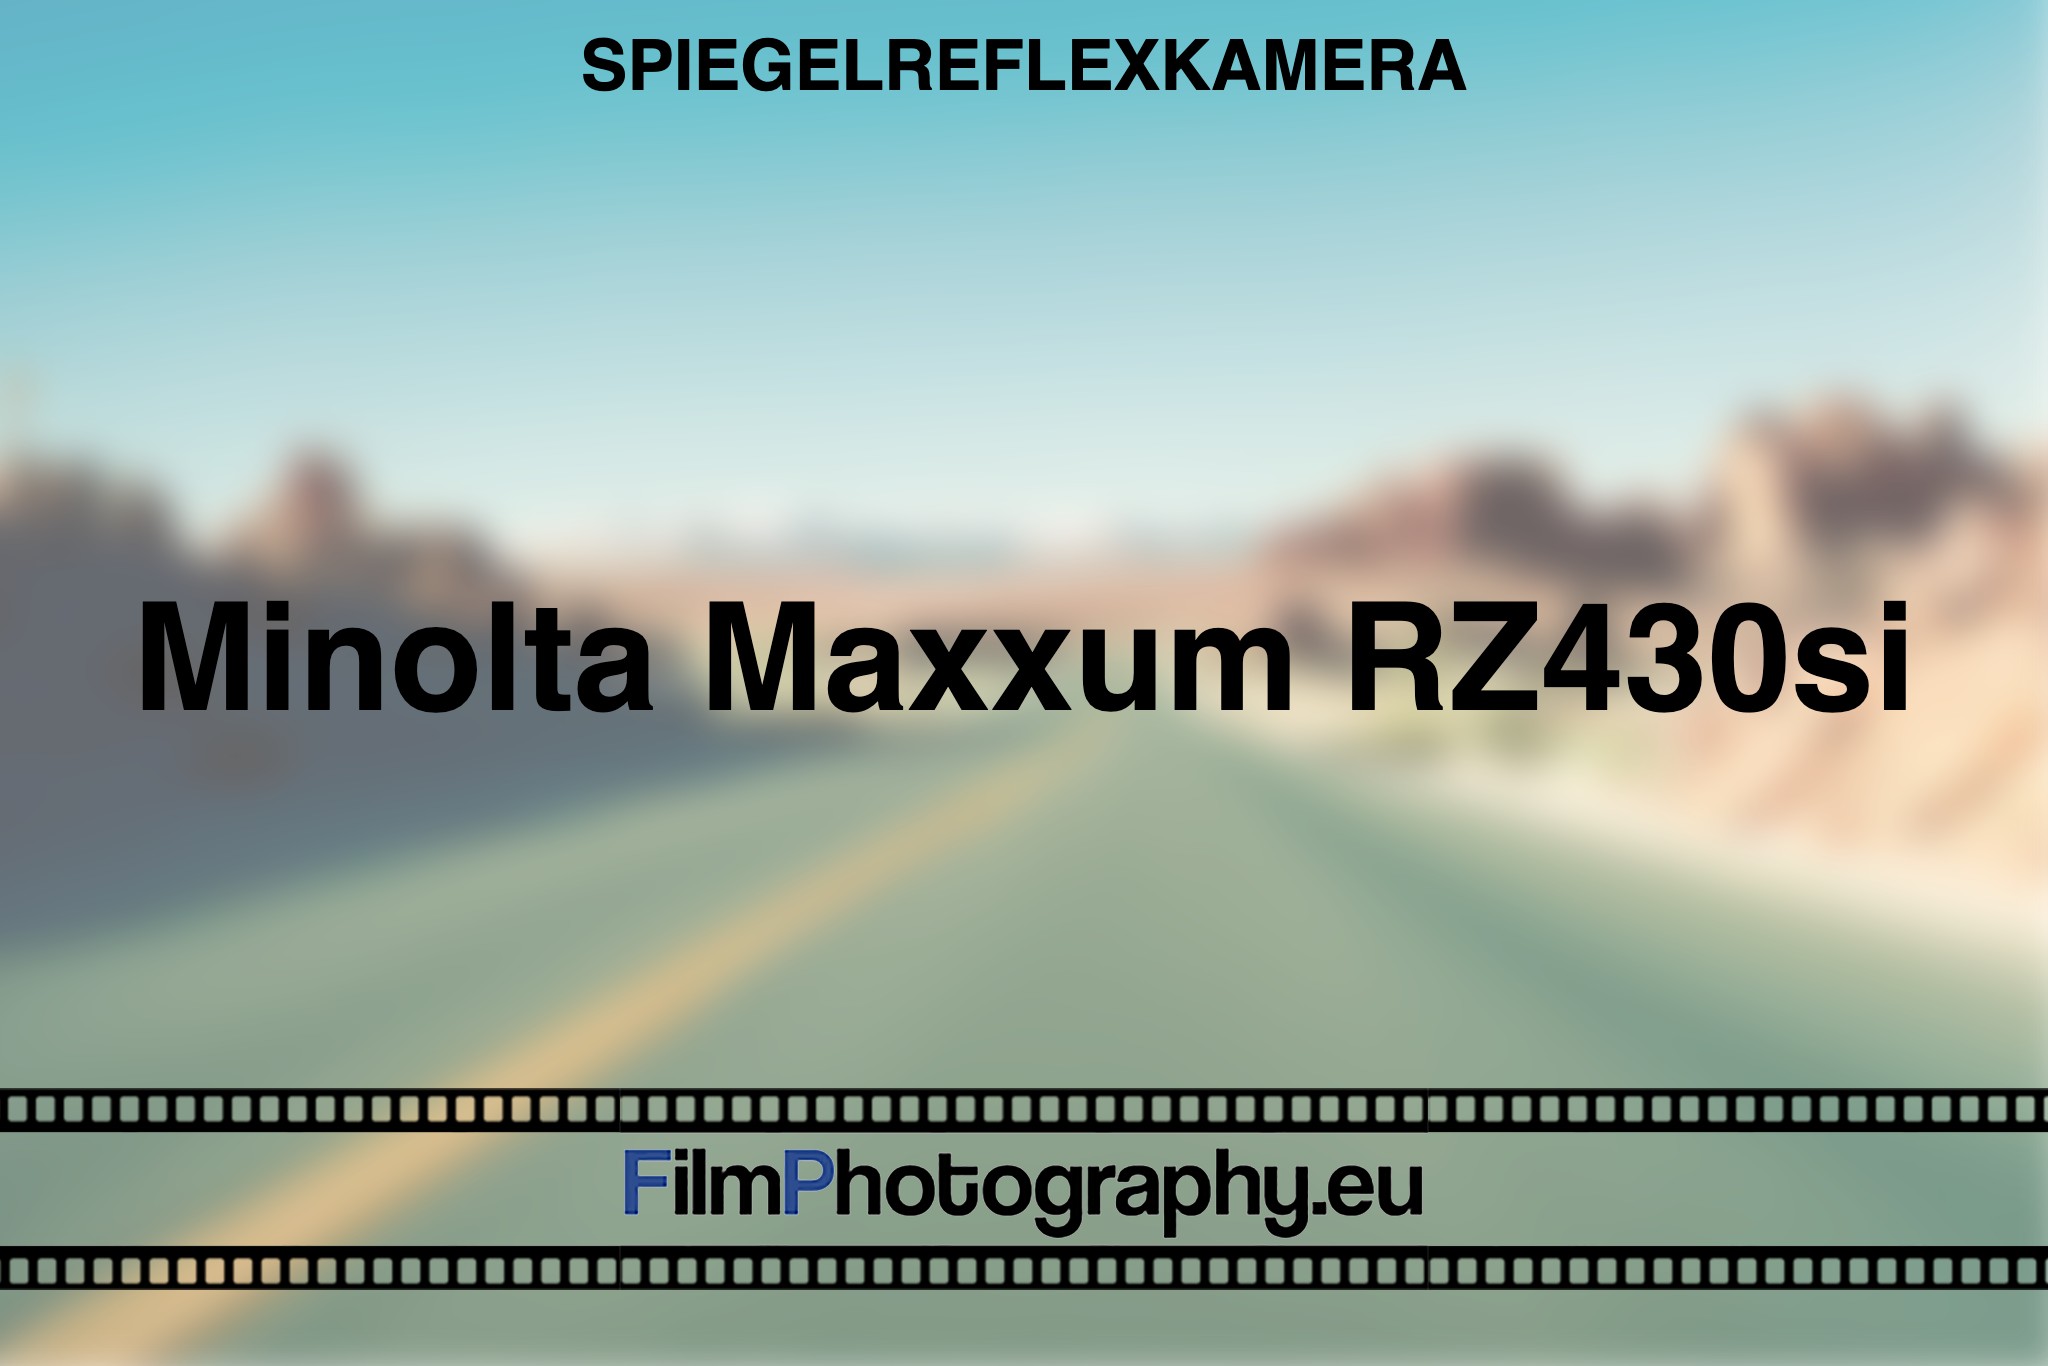 minolta-maxxum-rz430si-spiegelreflexkamera-bnv